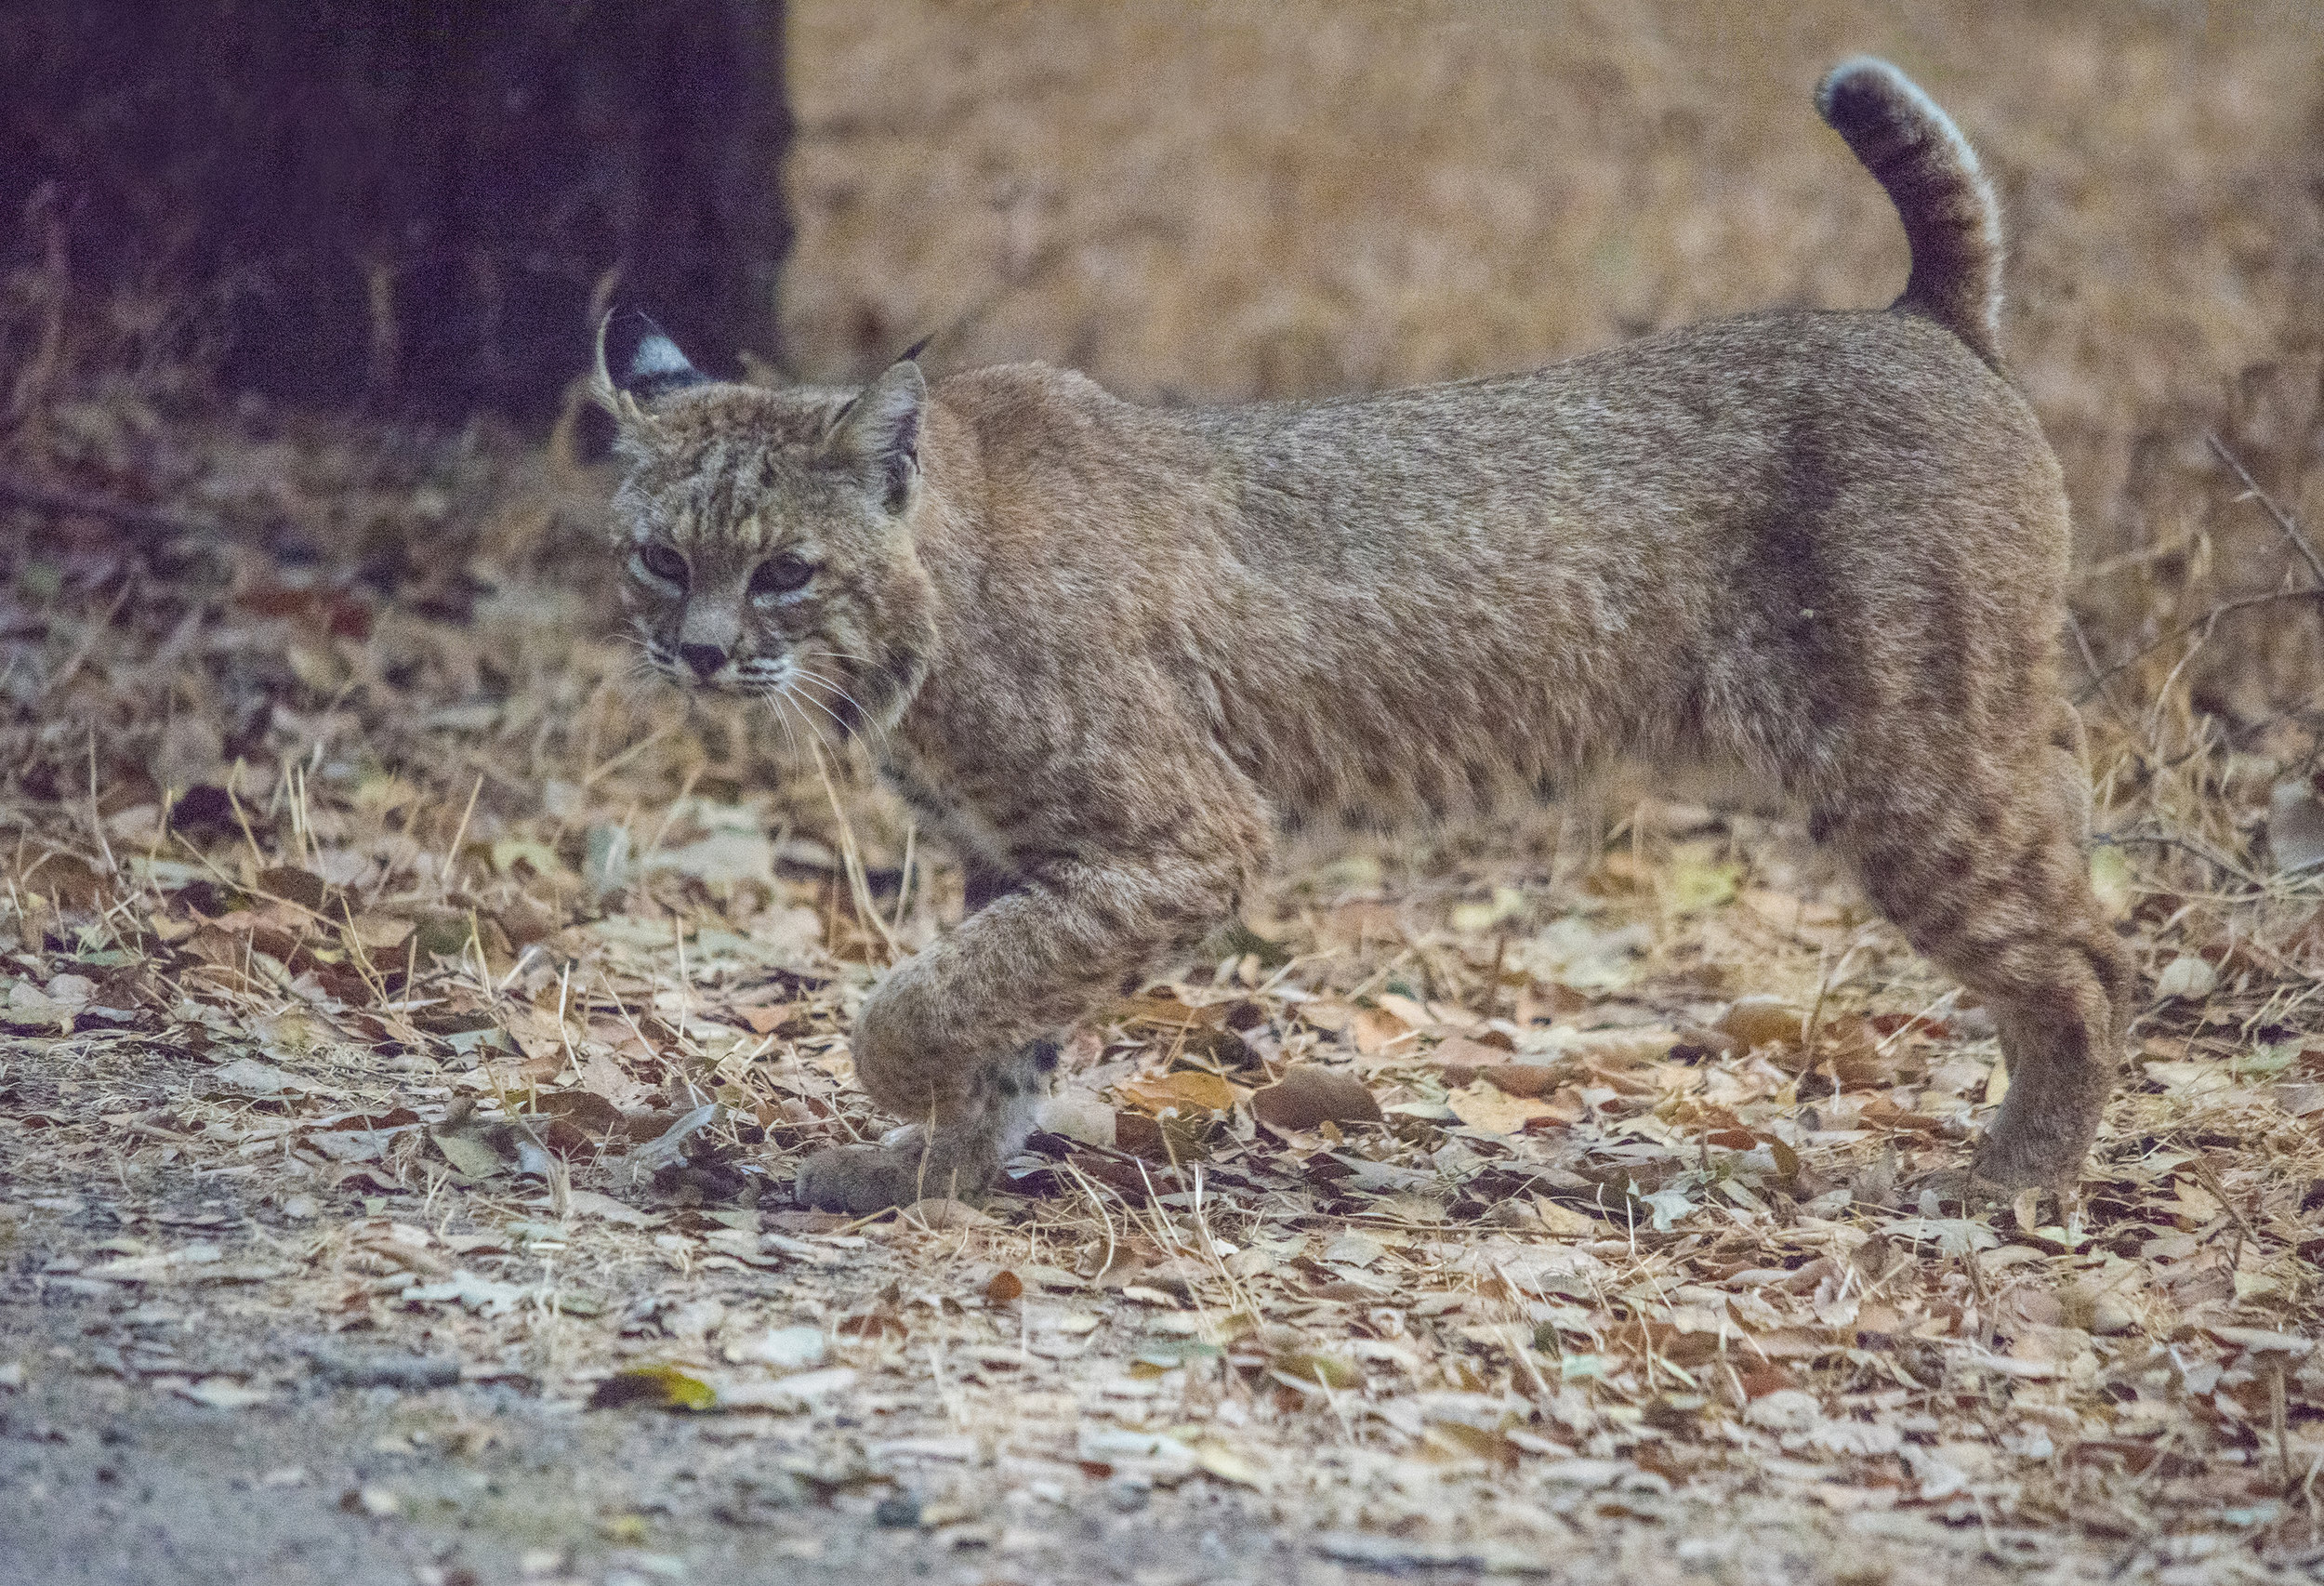 Bobcat at Coyote Creek Trail, San Jose, California